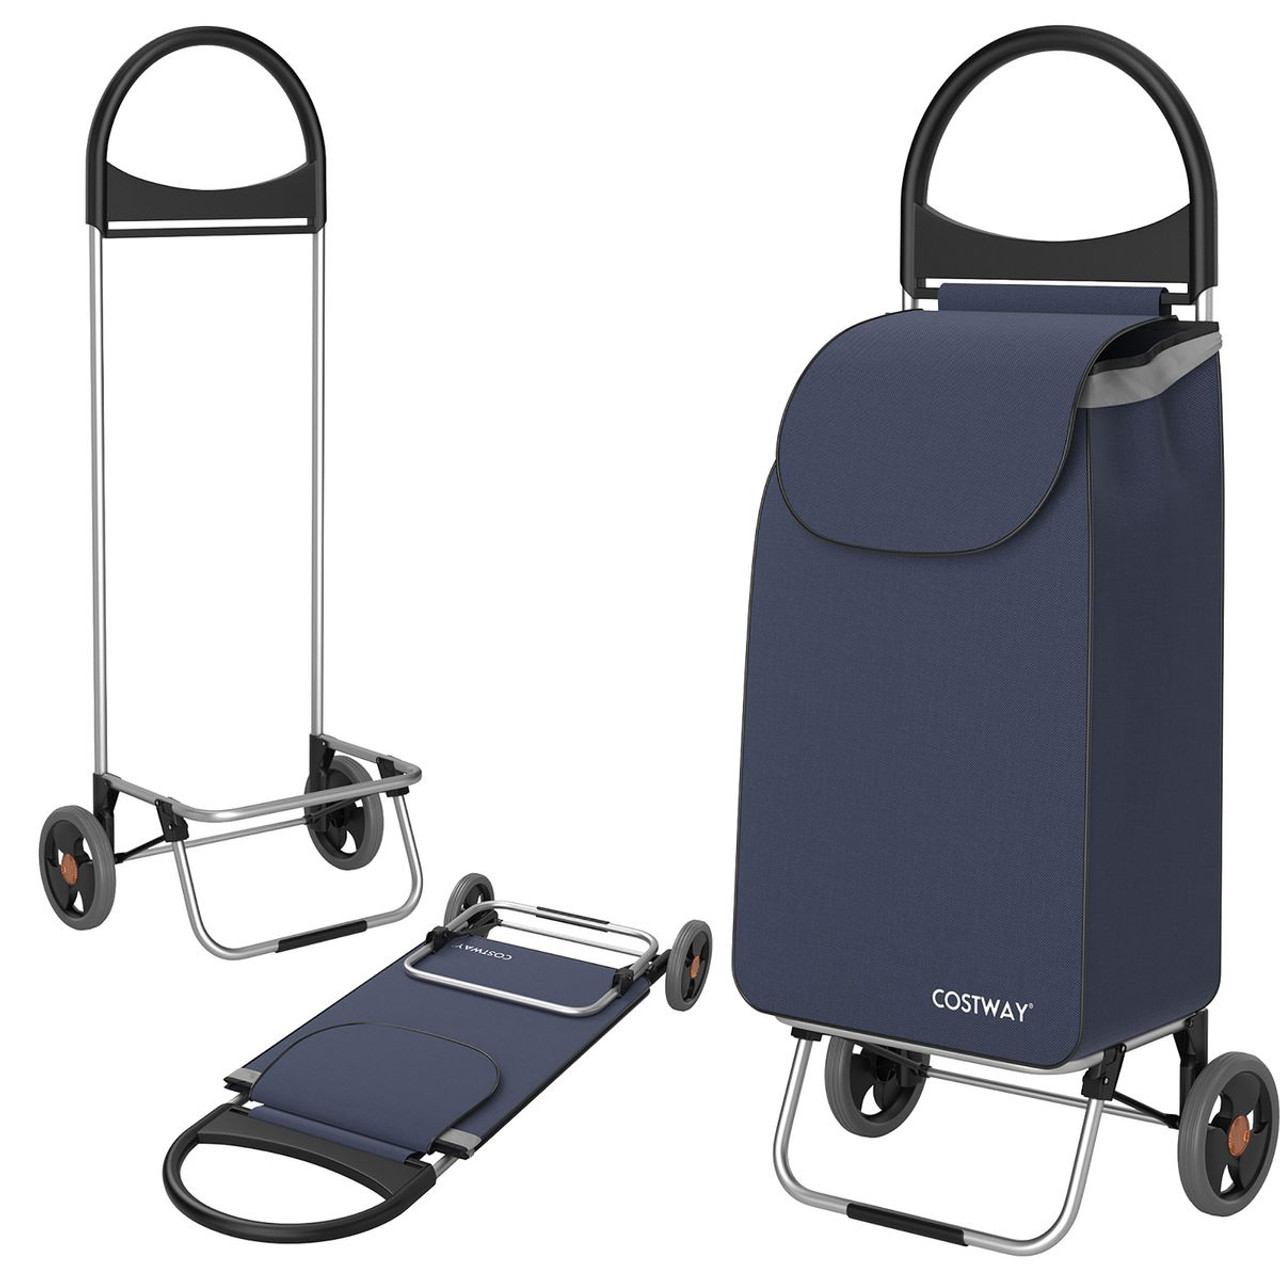 Folding Utility & Shopping Cart product image